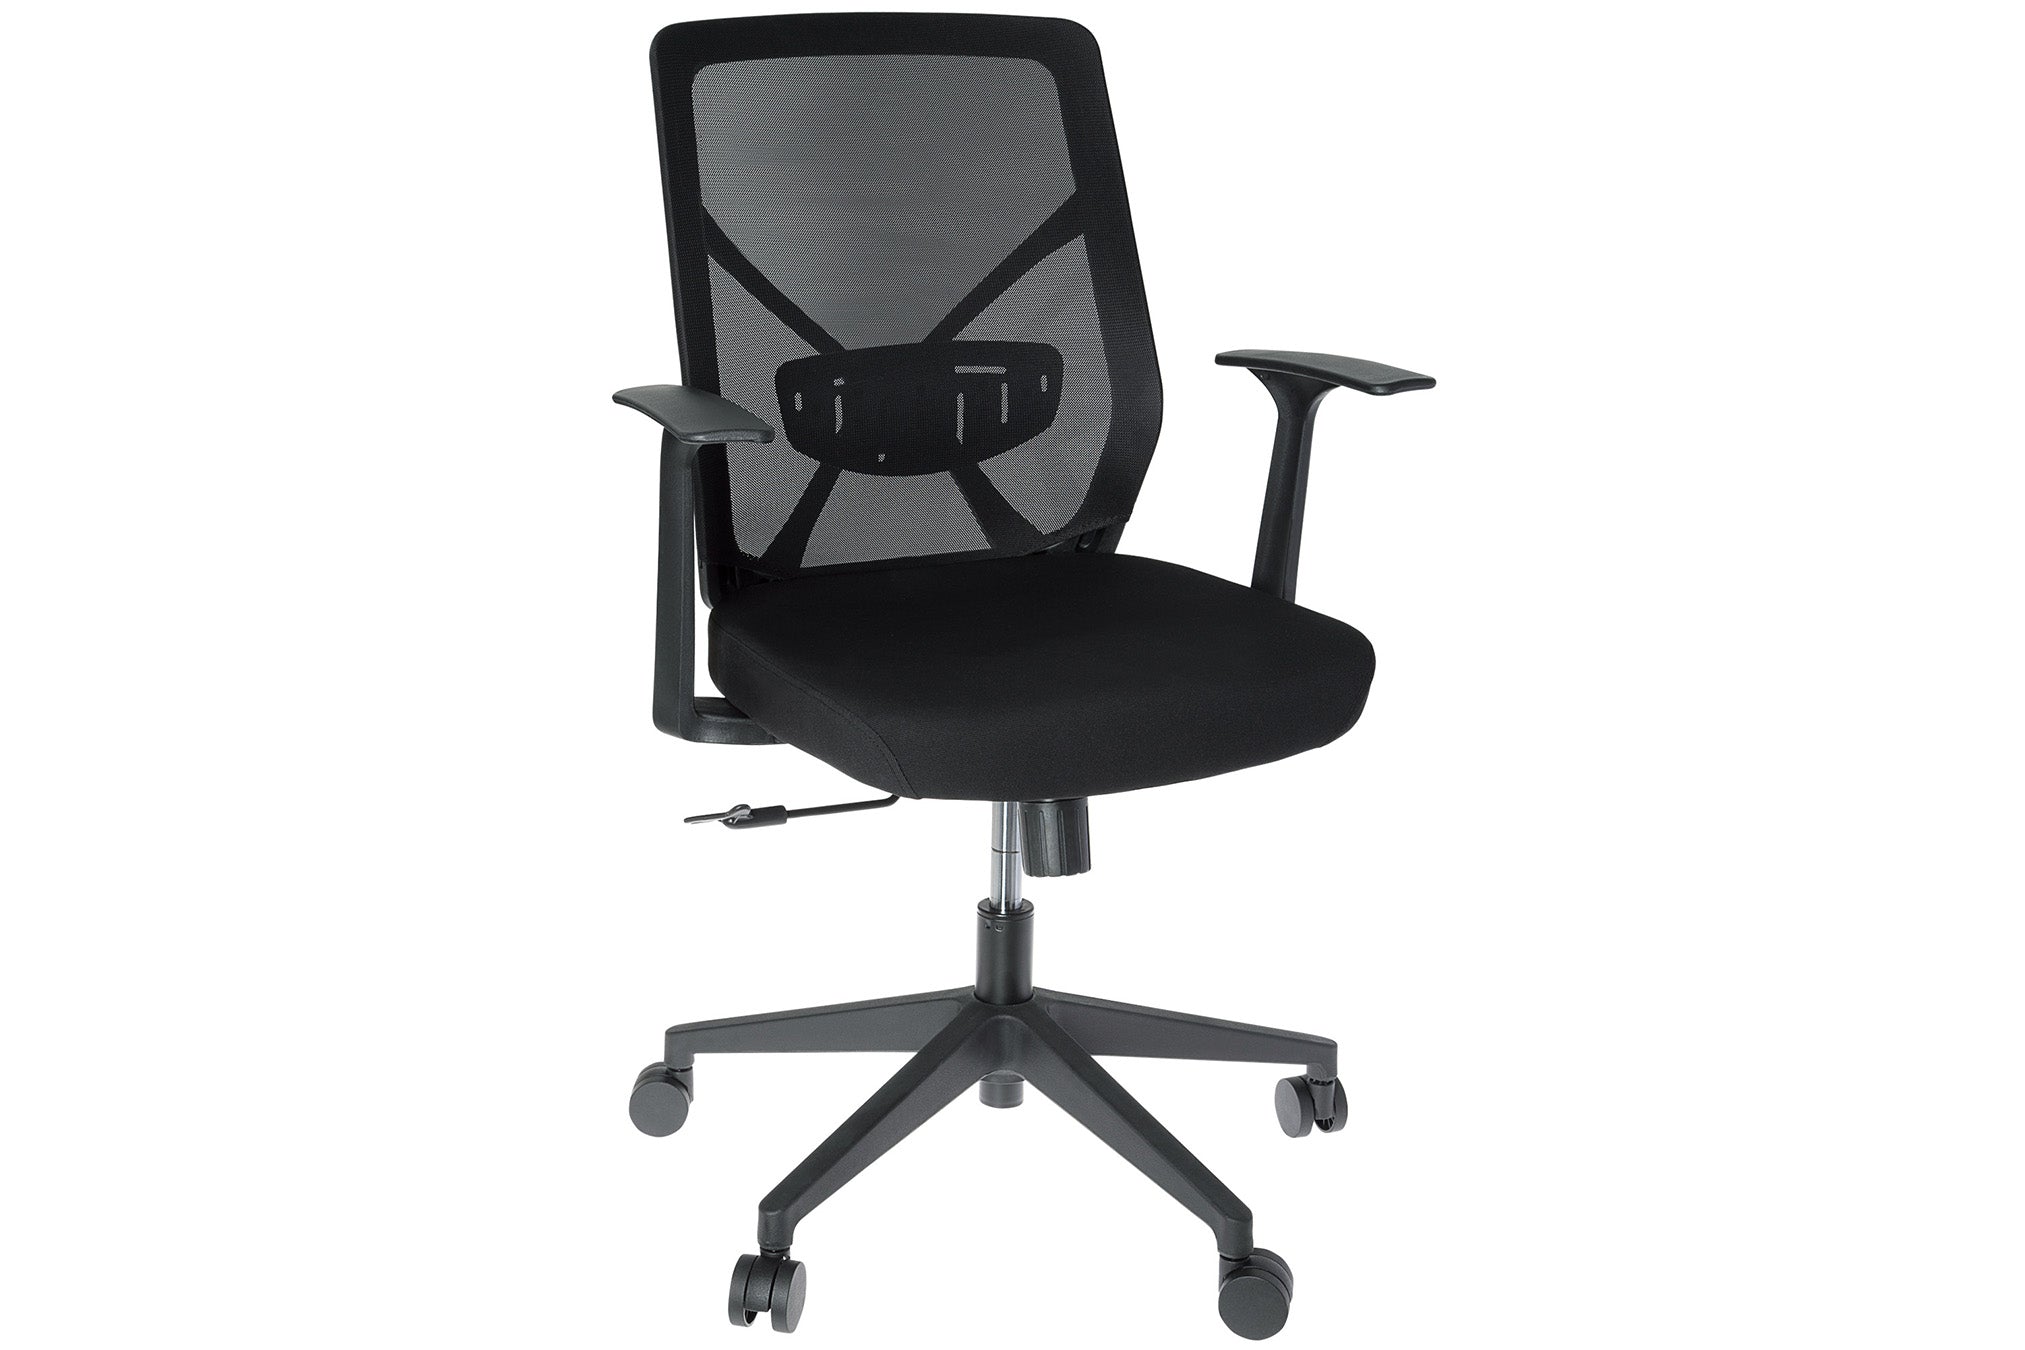 ProperAV Ergonomic High-Back Mesh Office Chair